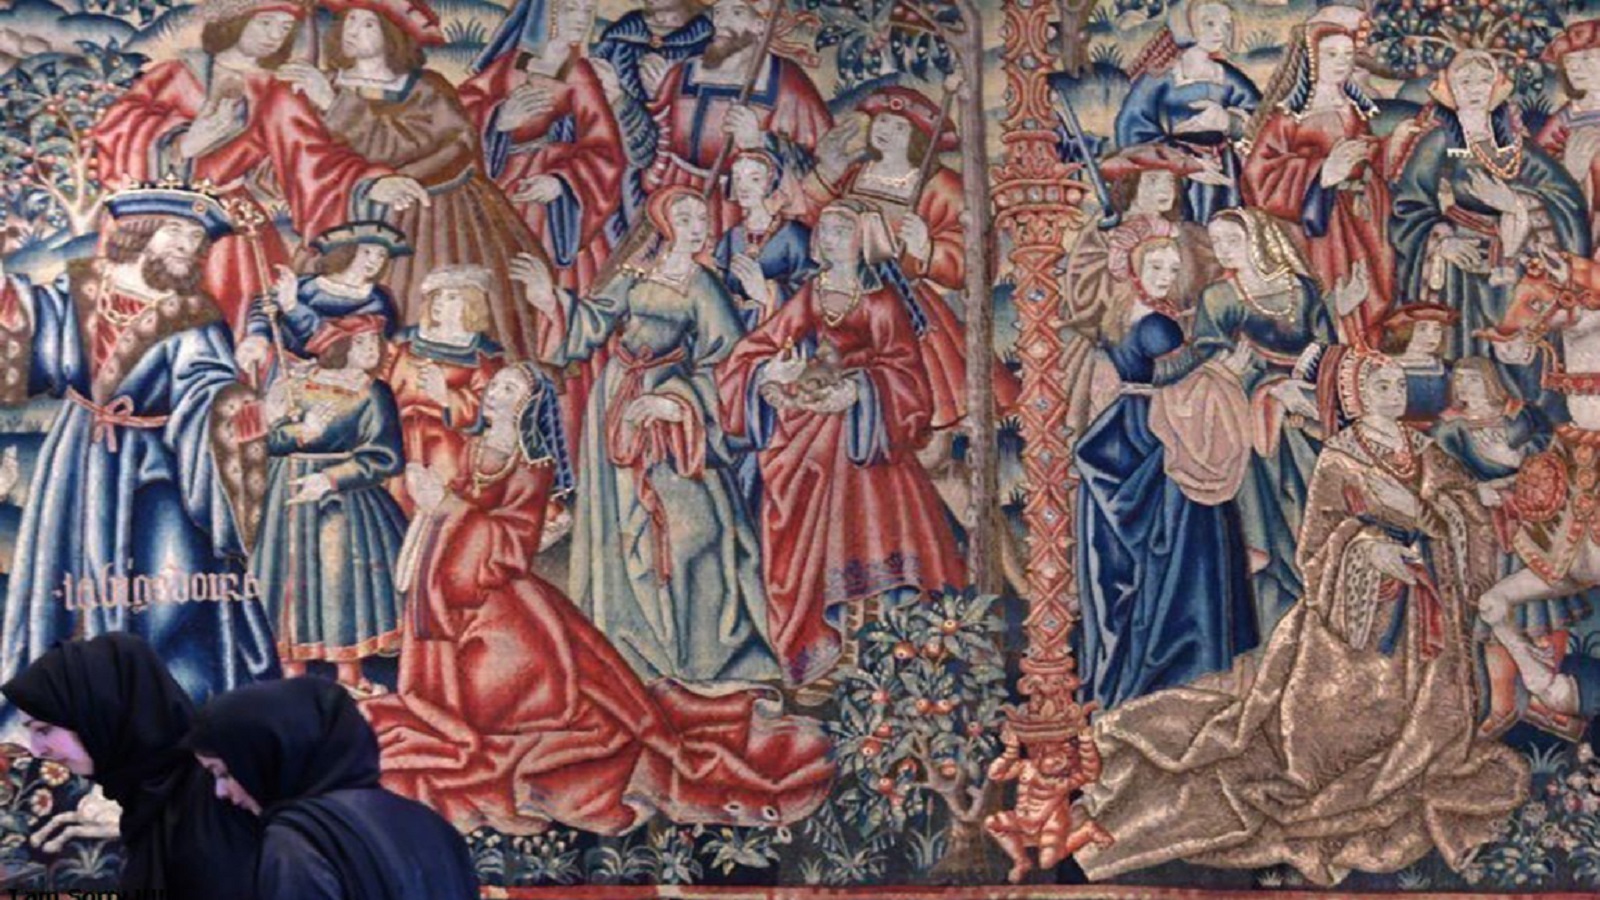 لوحة فرنسية من القرن السادس عشر، وتمثل النبي دانيال في بلاط نبوخذ نصّر.